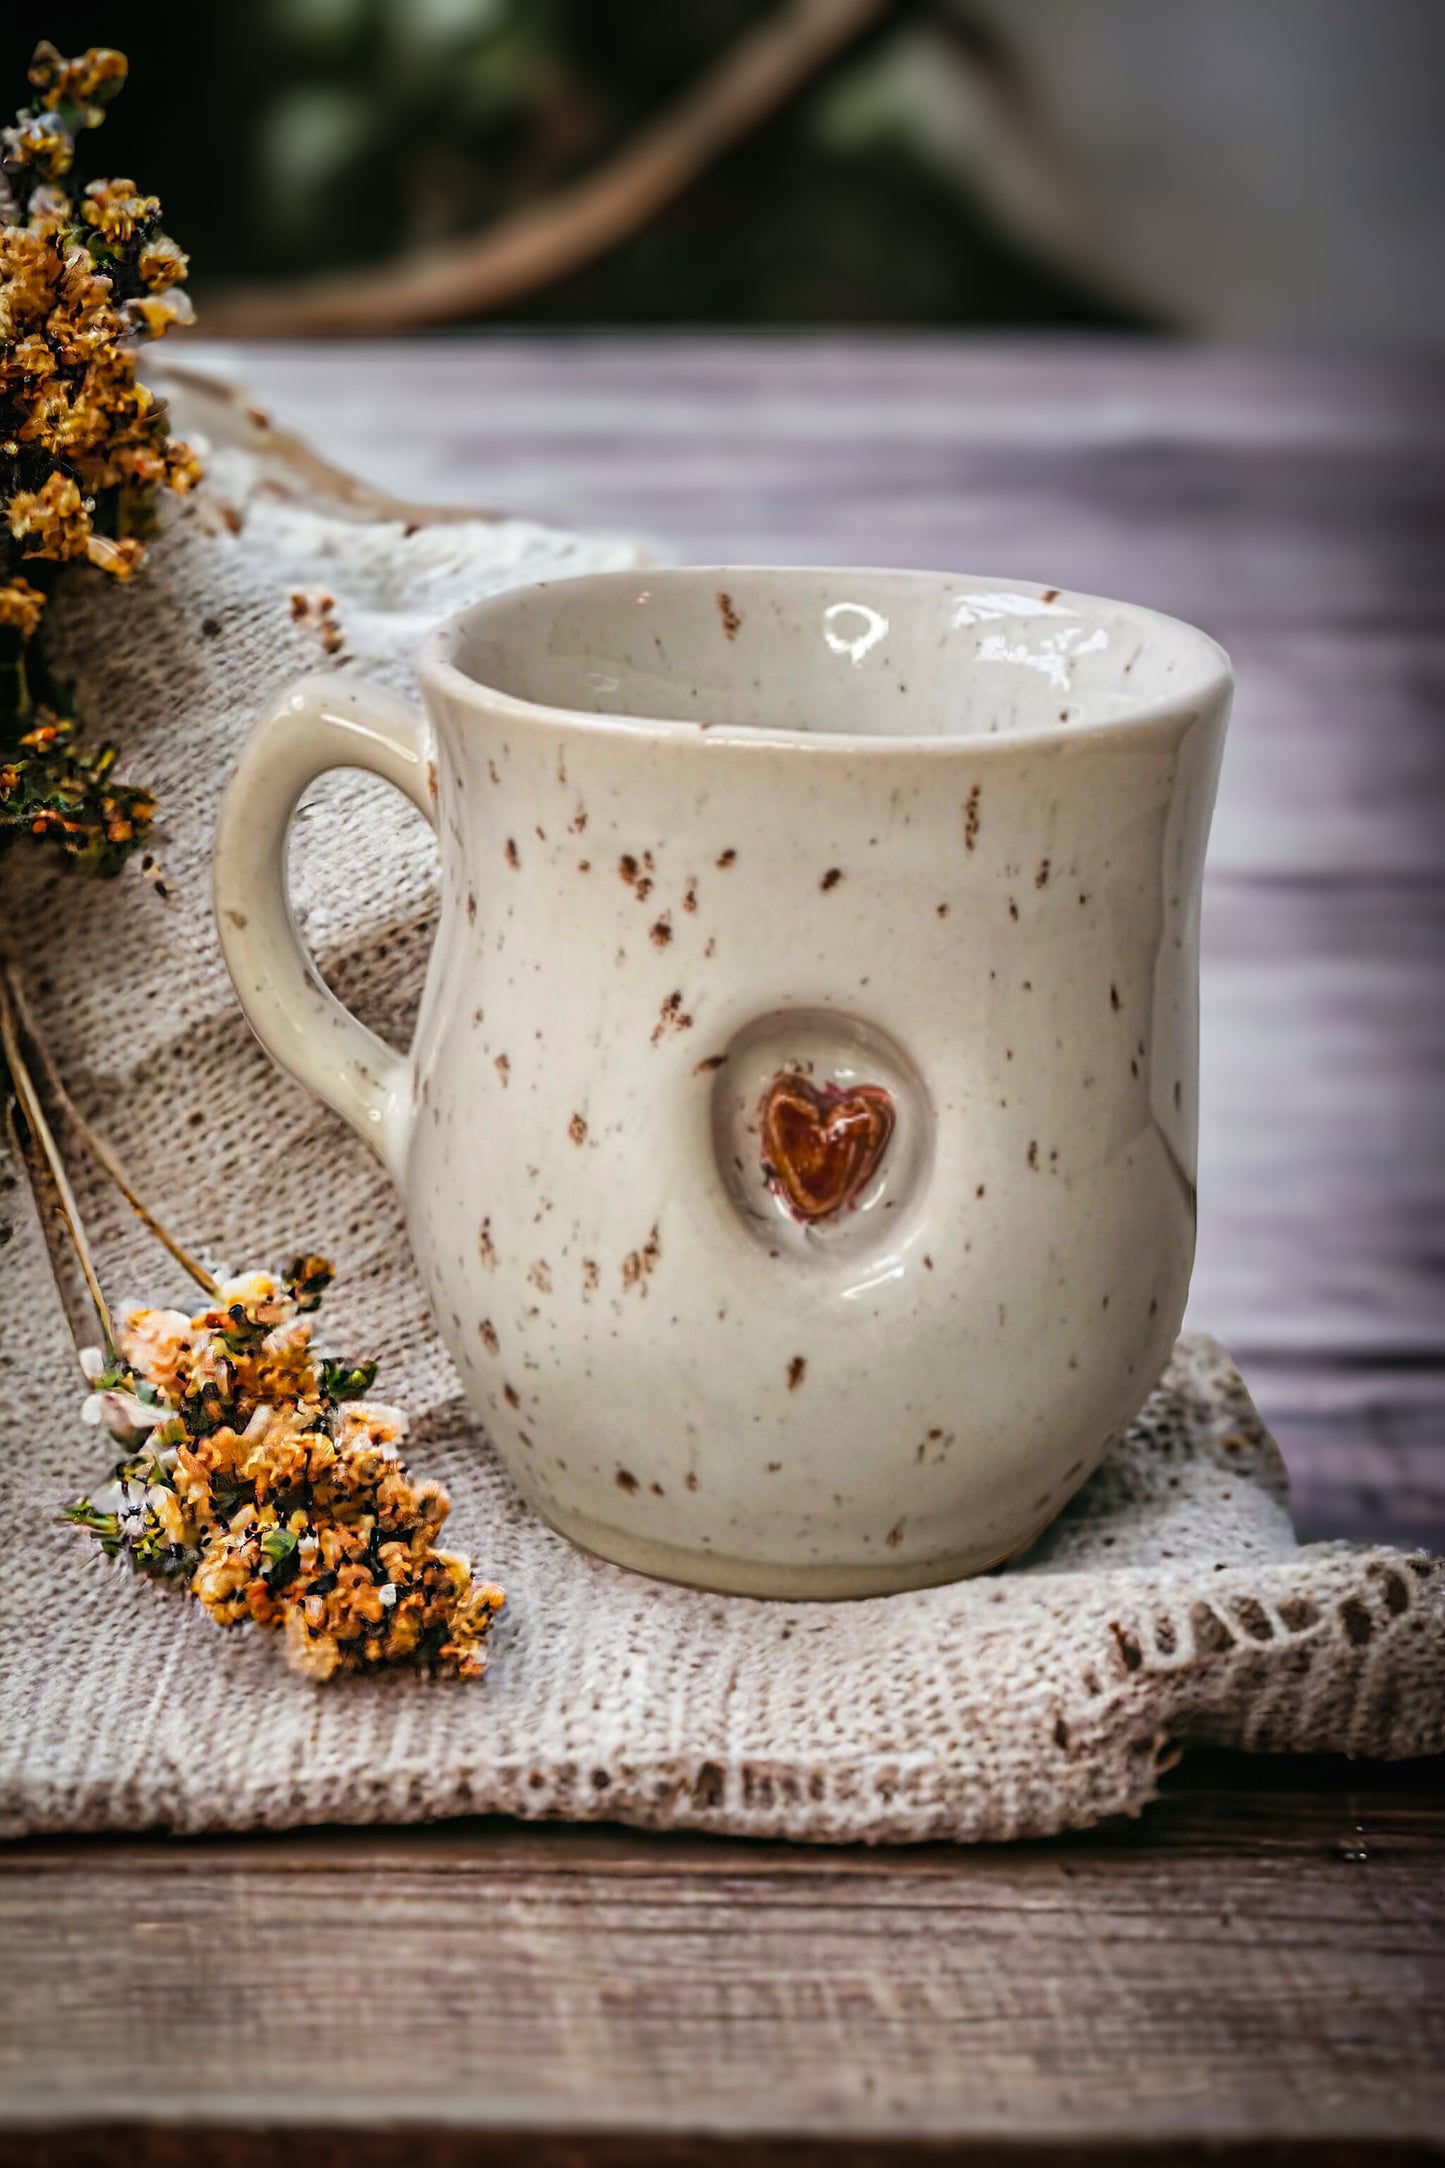 Ceramic mug with a heart